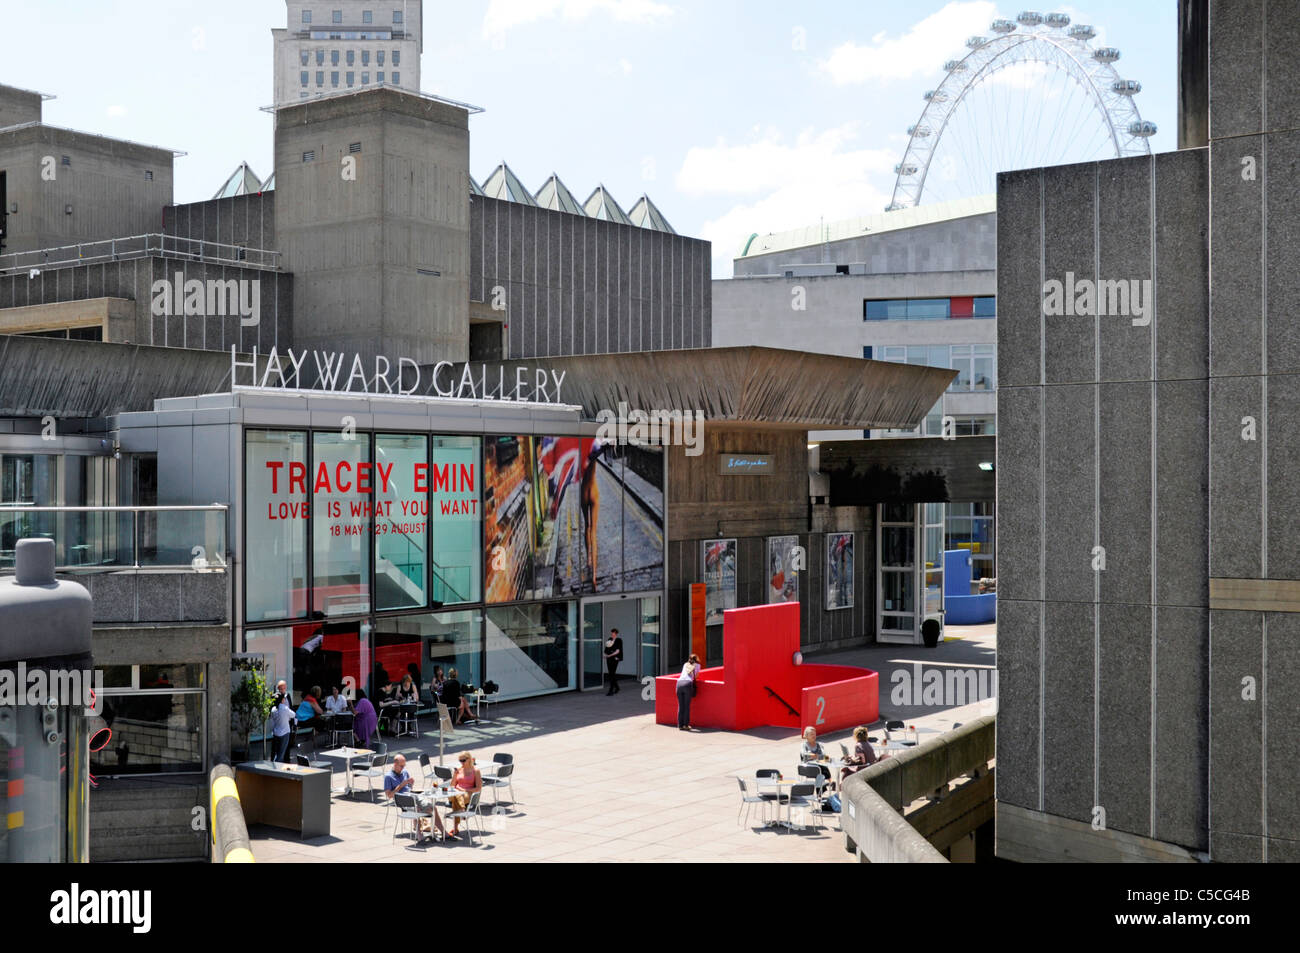 Southbank Centre Brutalist Architektur an die Hayward Gallery mit Tracey Emin Ausstellung am Südufer der Themse Lambeth London England Großbritannien Stockfoto